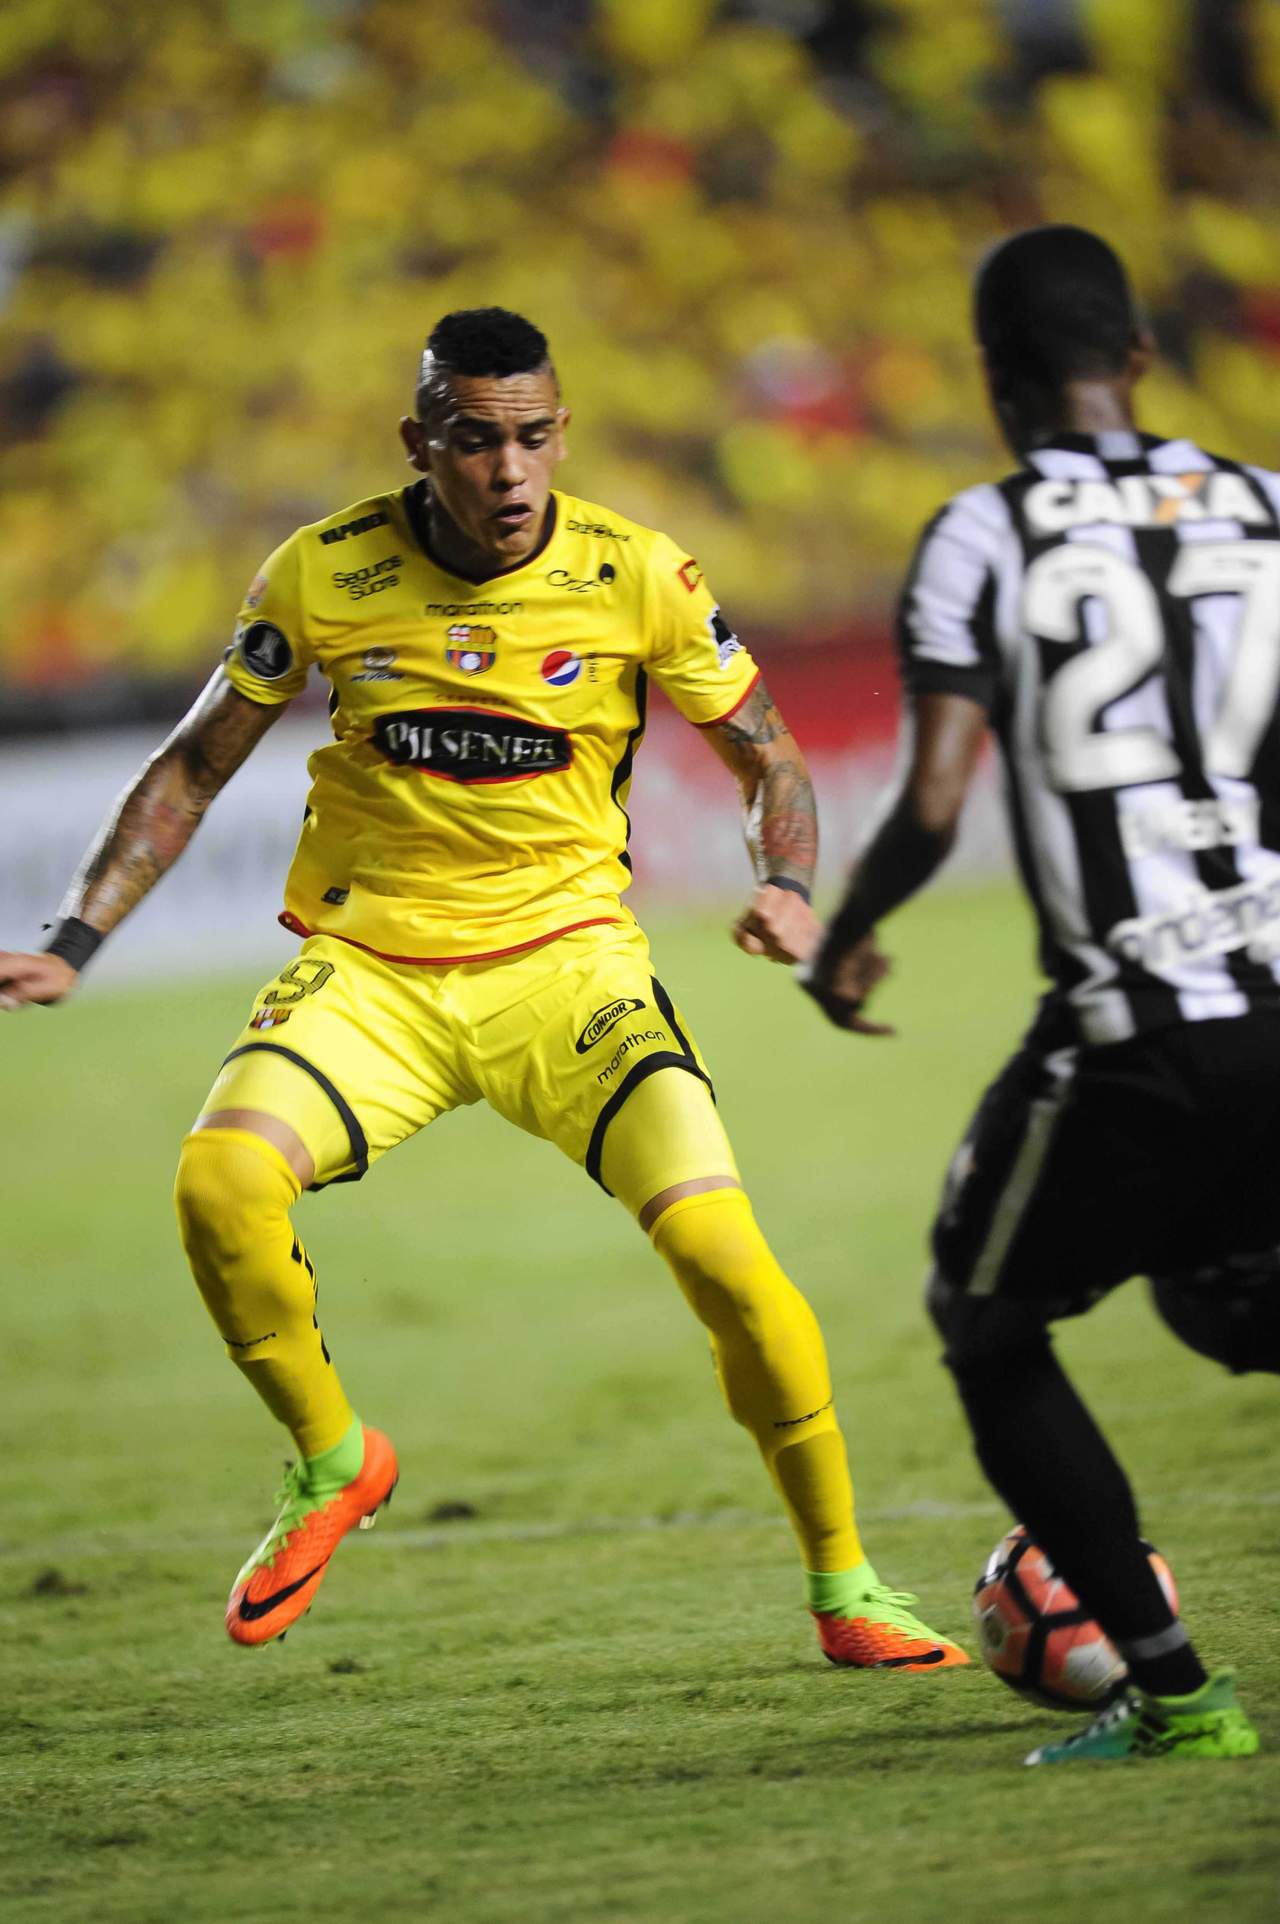 El atacante juega actualmente para el Barcelona de Guayaquil en Ecuador.